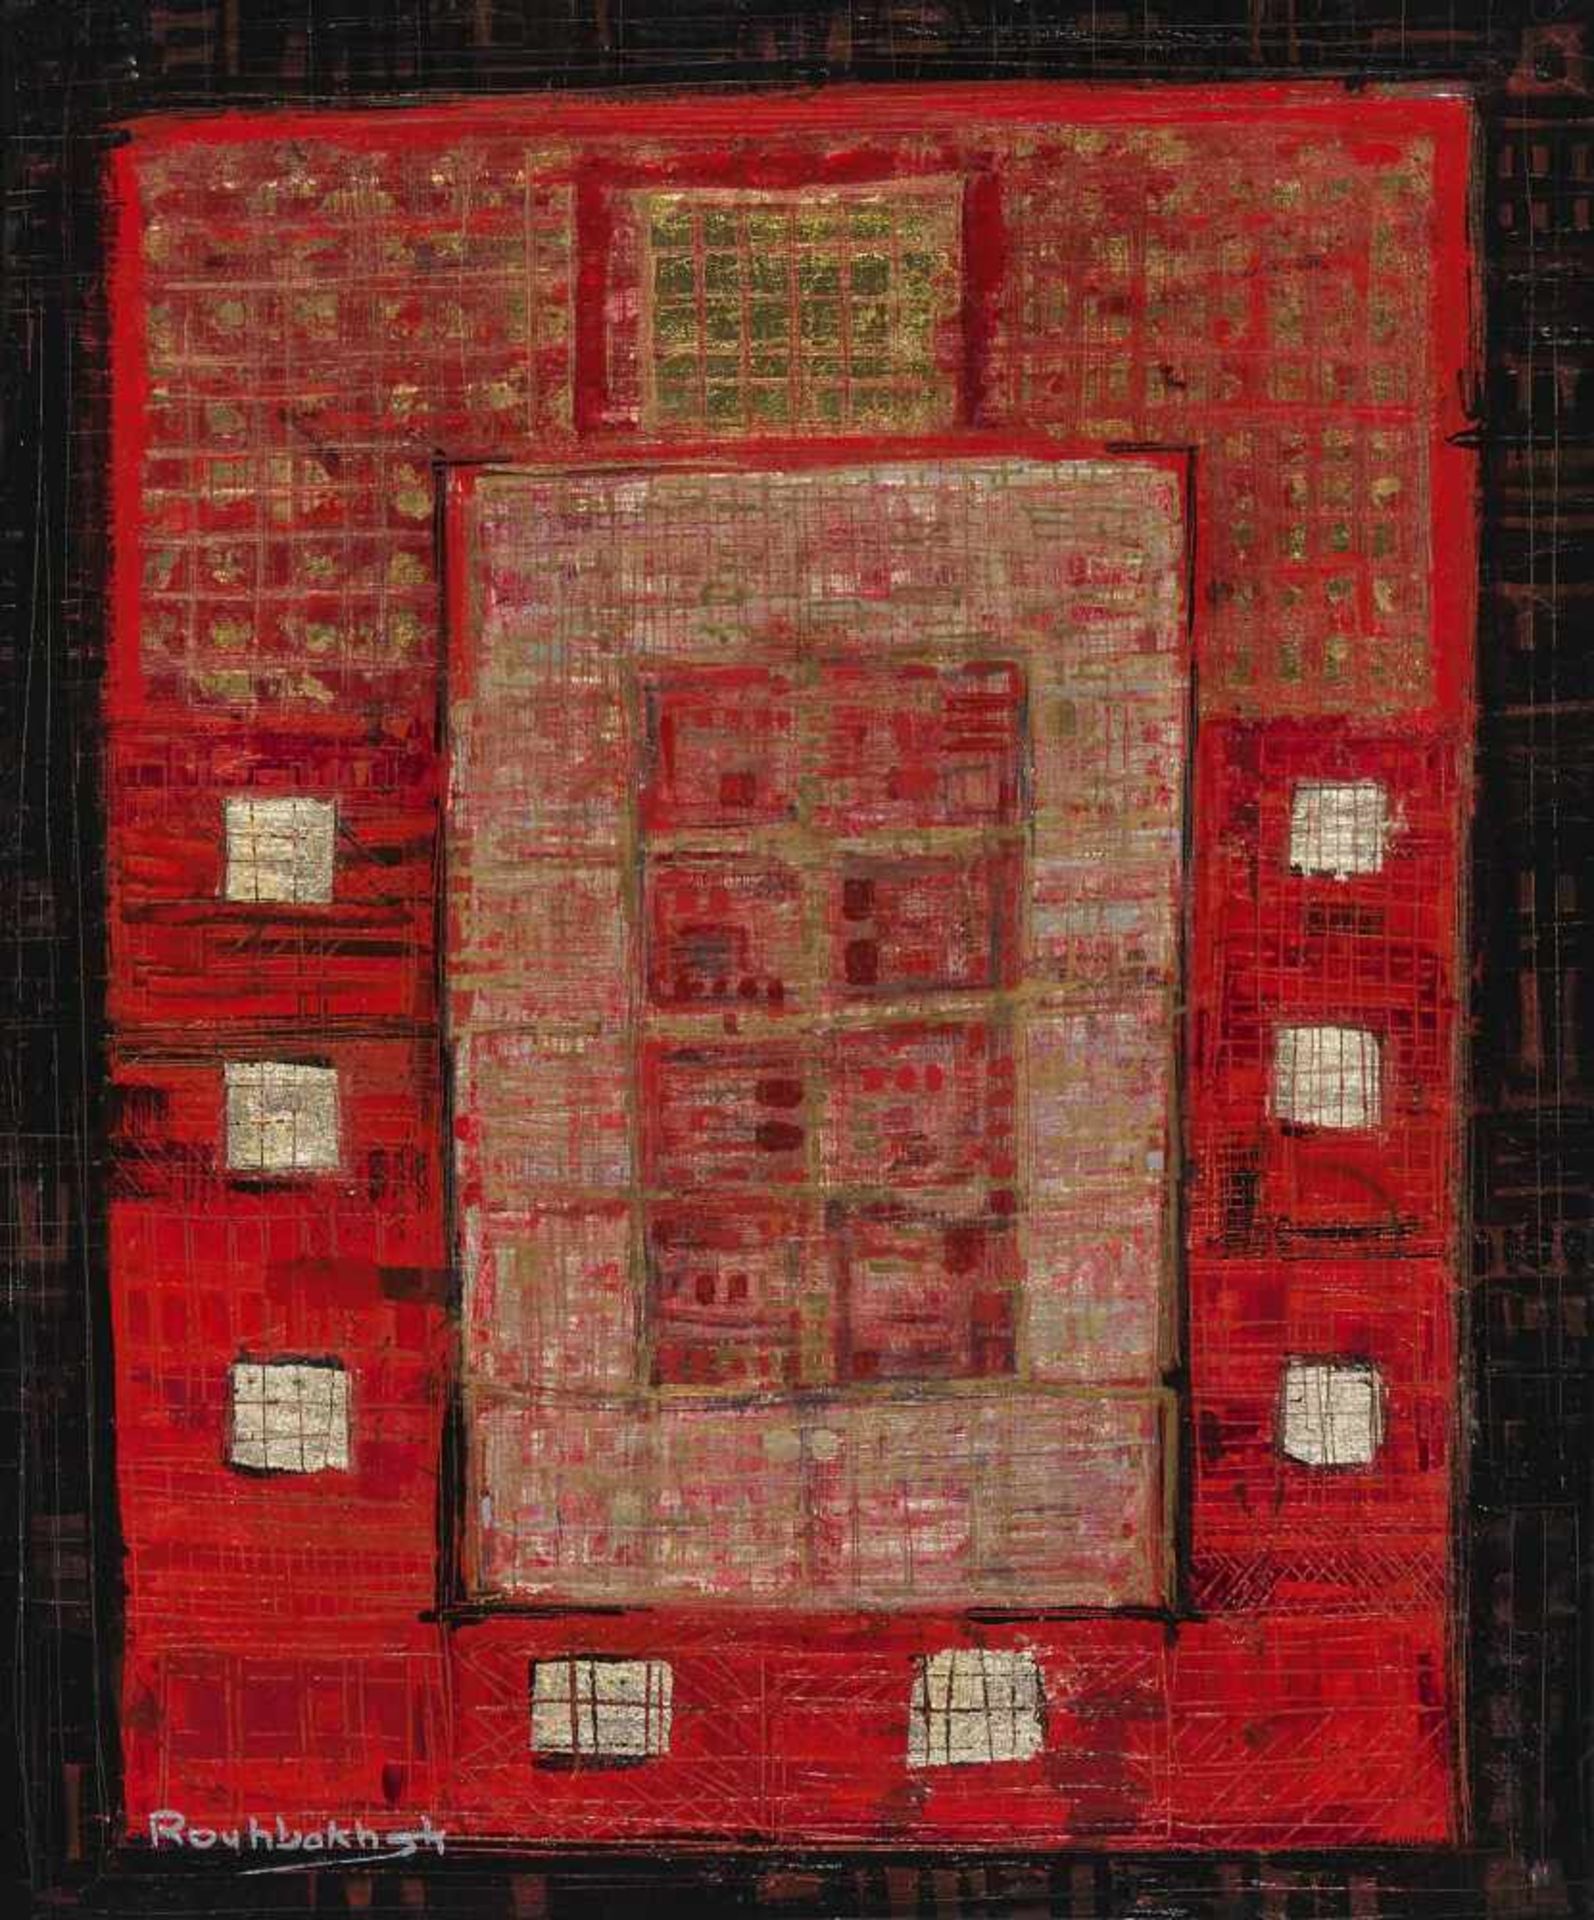 Rouhbakhsh, Jafar (Mashhad, Iran 1940–1996)Komposition in Rot. Mischtechnik auf Leinwand. Unten